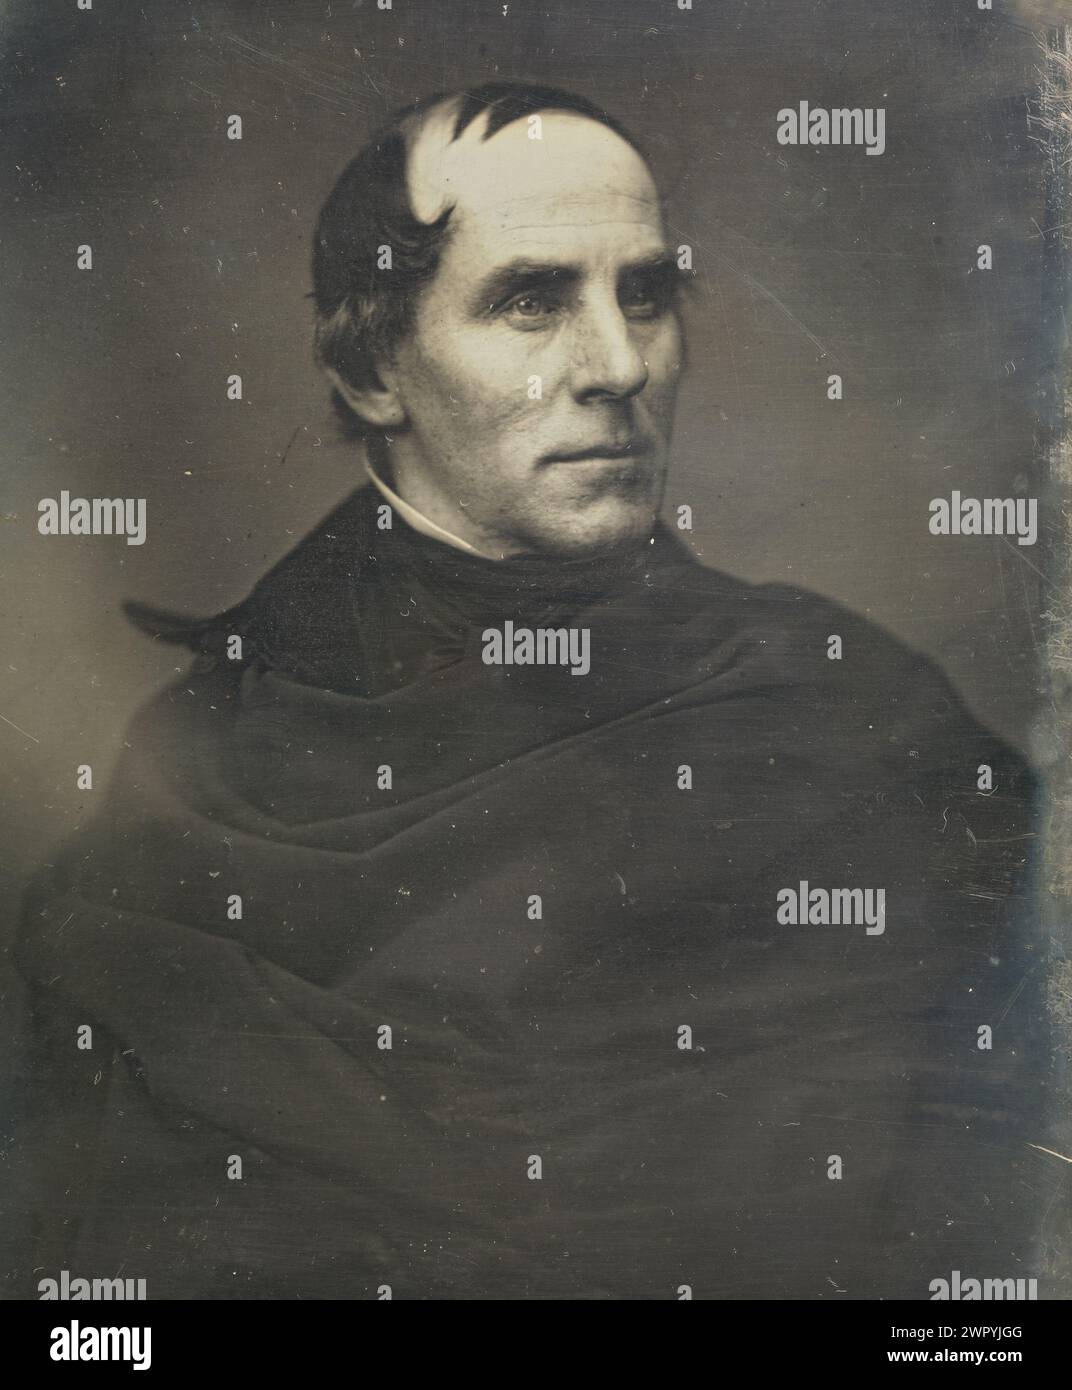 Retrato del artista estadounidense Thomas Cole (1841-1848), fundador de la Escuela de Arte del Río Hudson, daguerrotipo por Mathew B. Brady ca 1845 Foto de stock